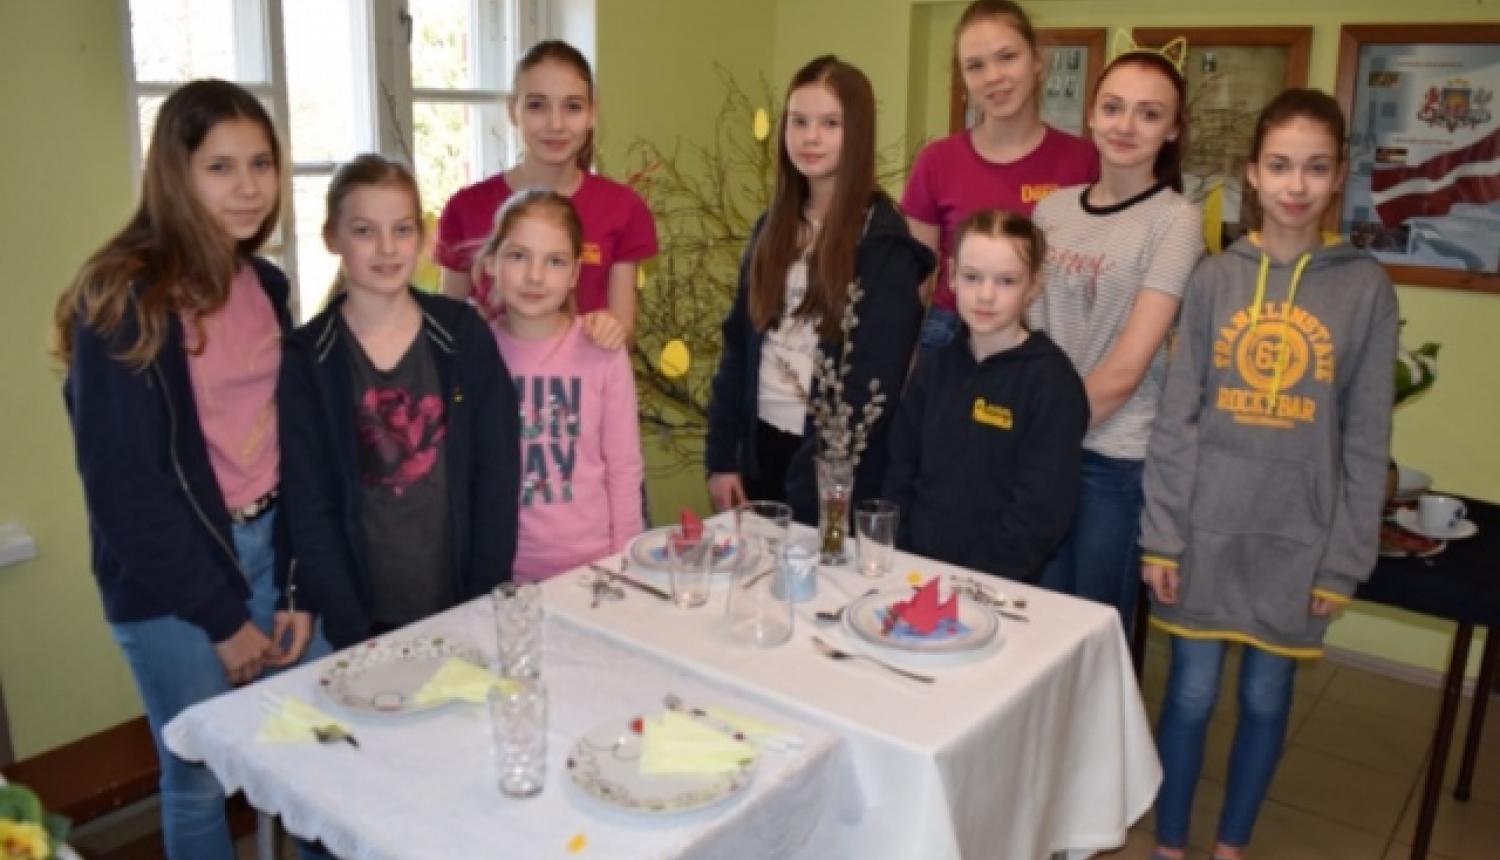 Ķeipenes pamatskolā noticis konkurss “Supermeitene 2019”